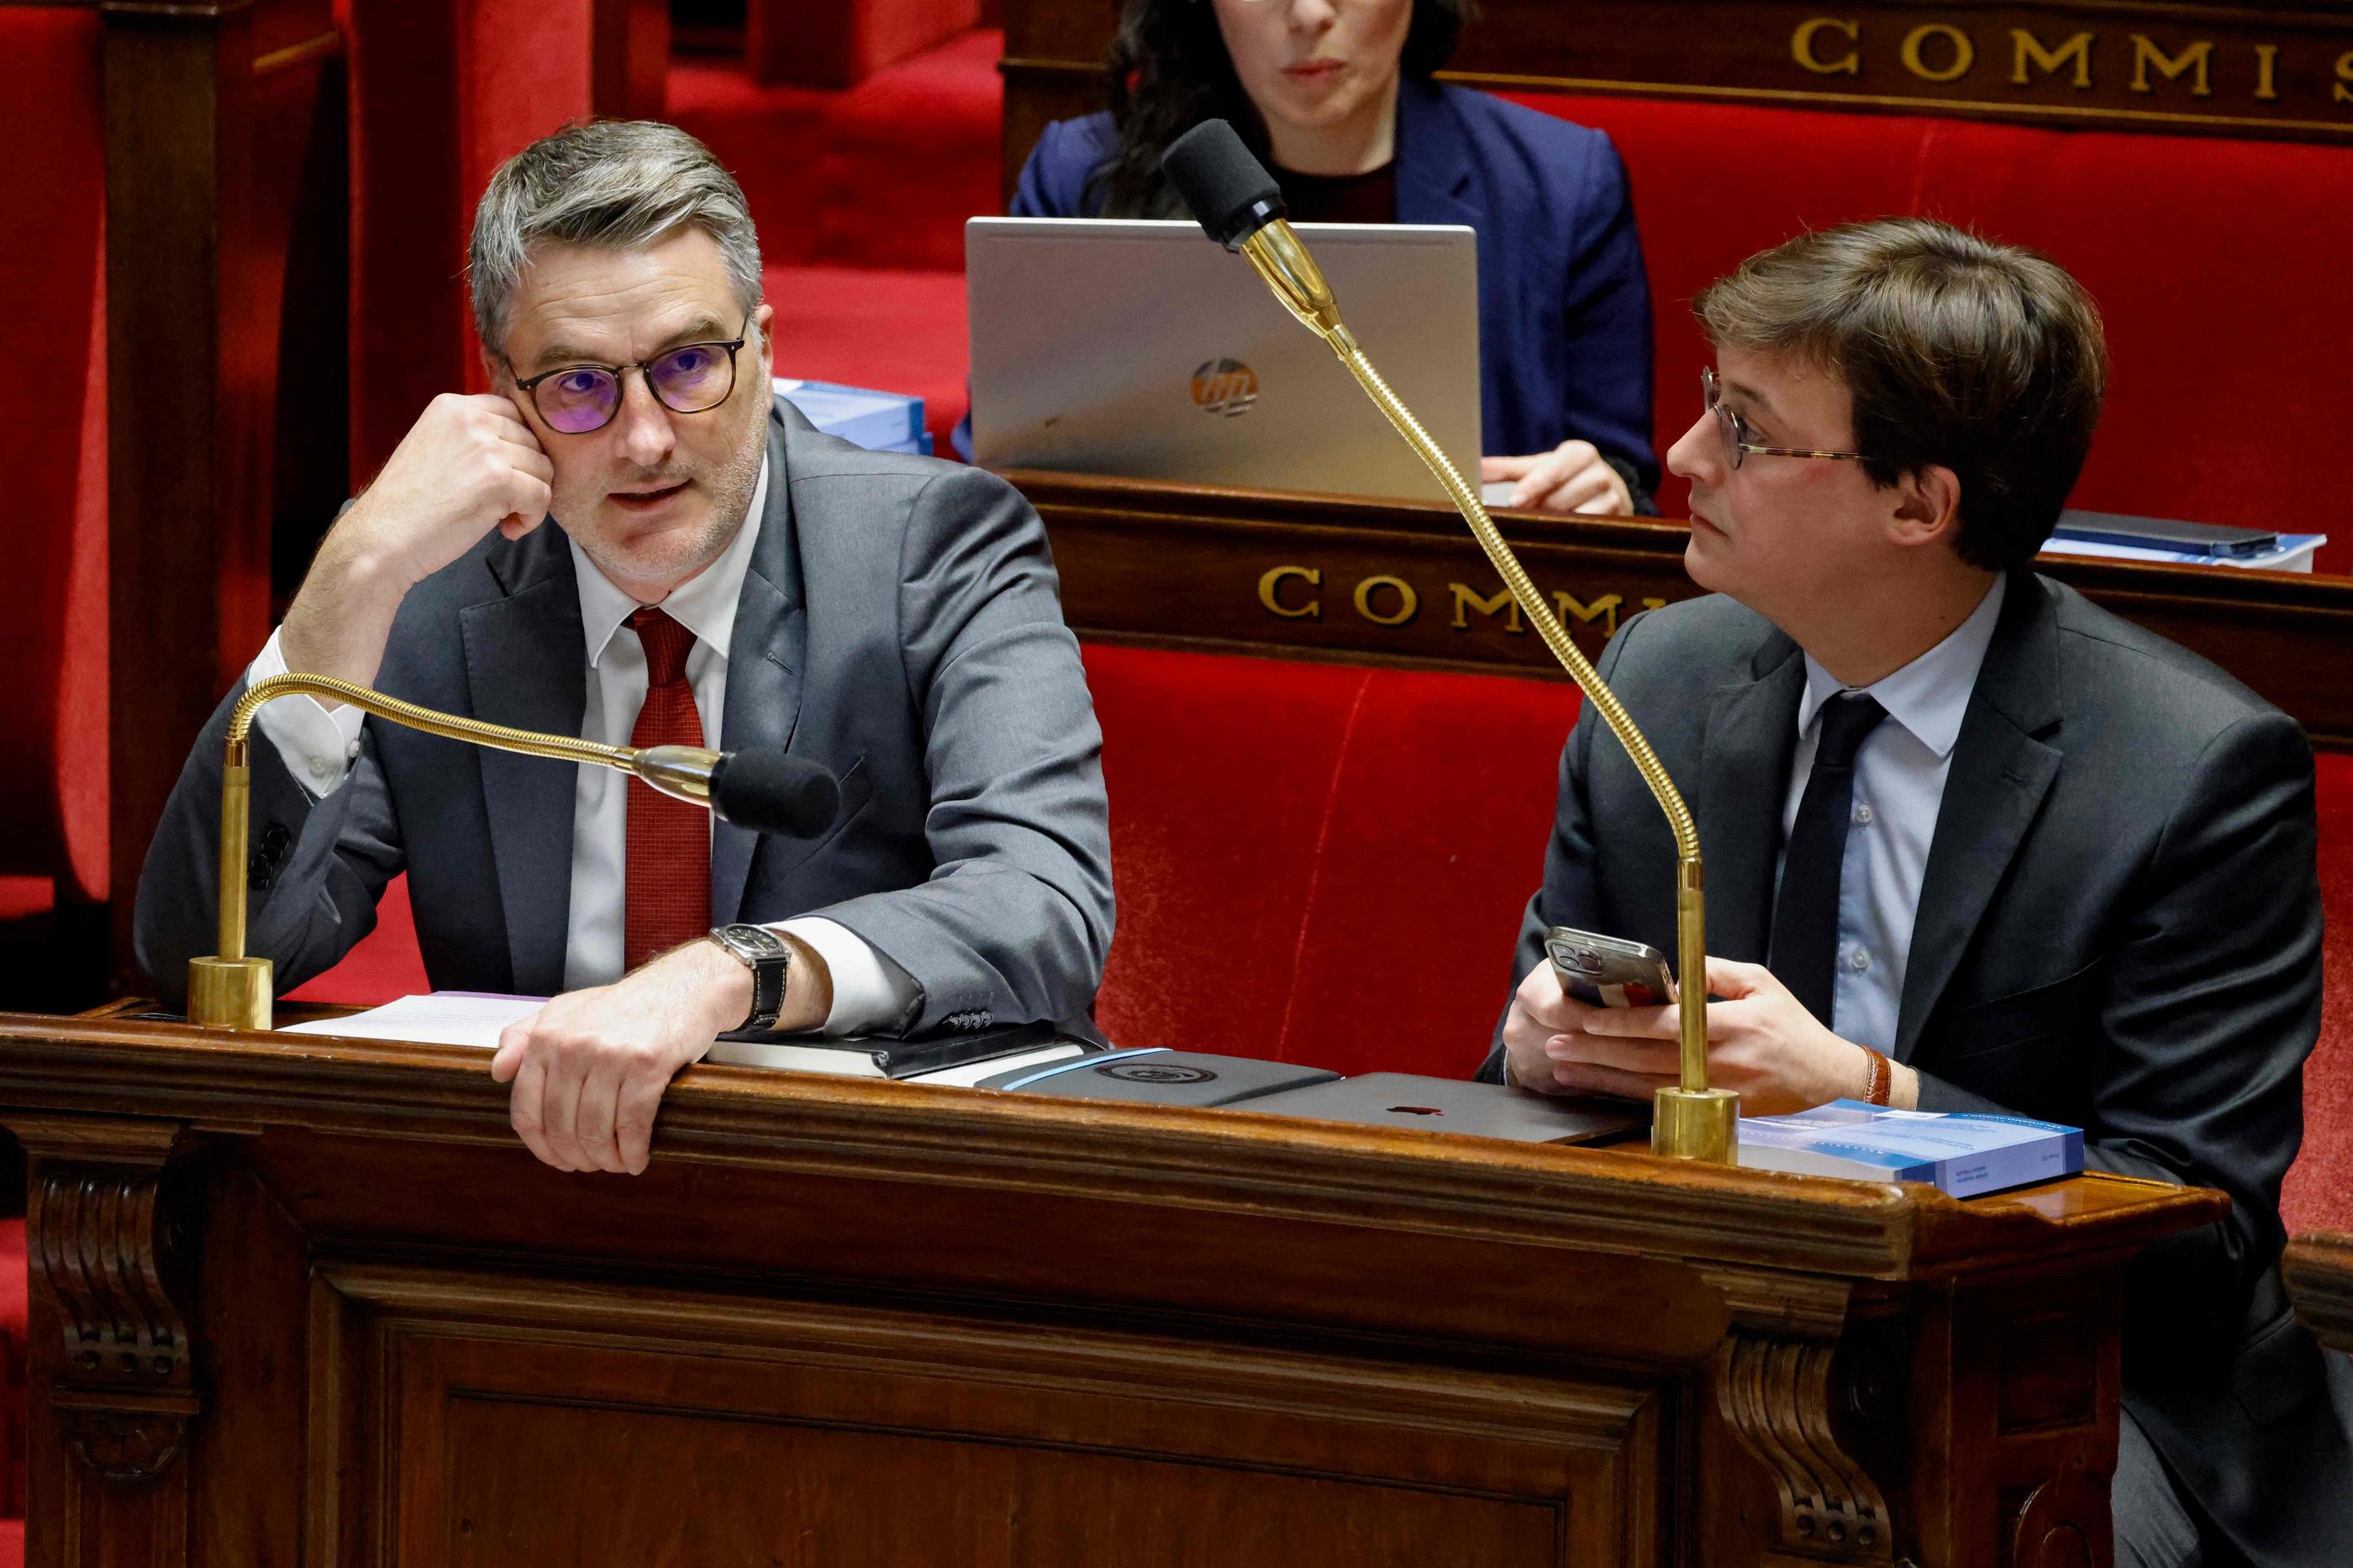 Le député Renaissance Florent Boudié (à gauche) et le président de la commission des lois à l'Assemblée Sacha Houlié (à gauche), qui présidera la commission mixte paritaire. AFP/Ludovic Marin